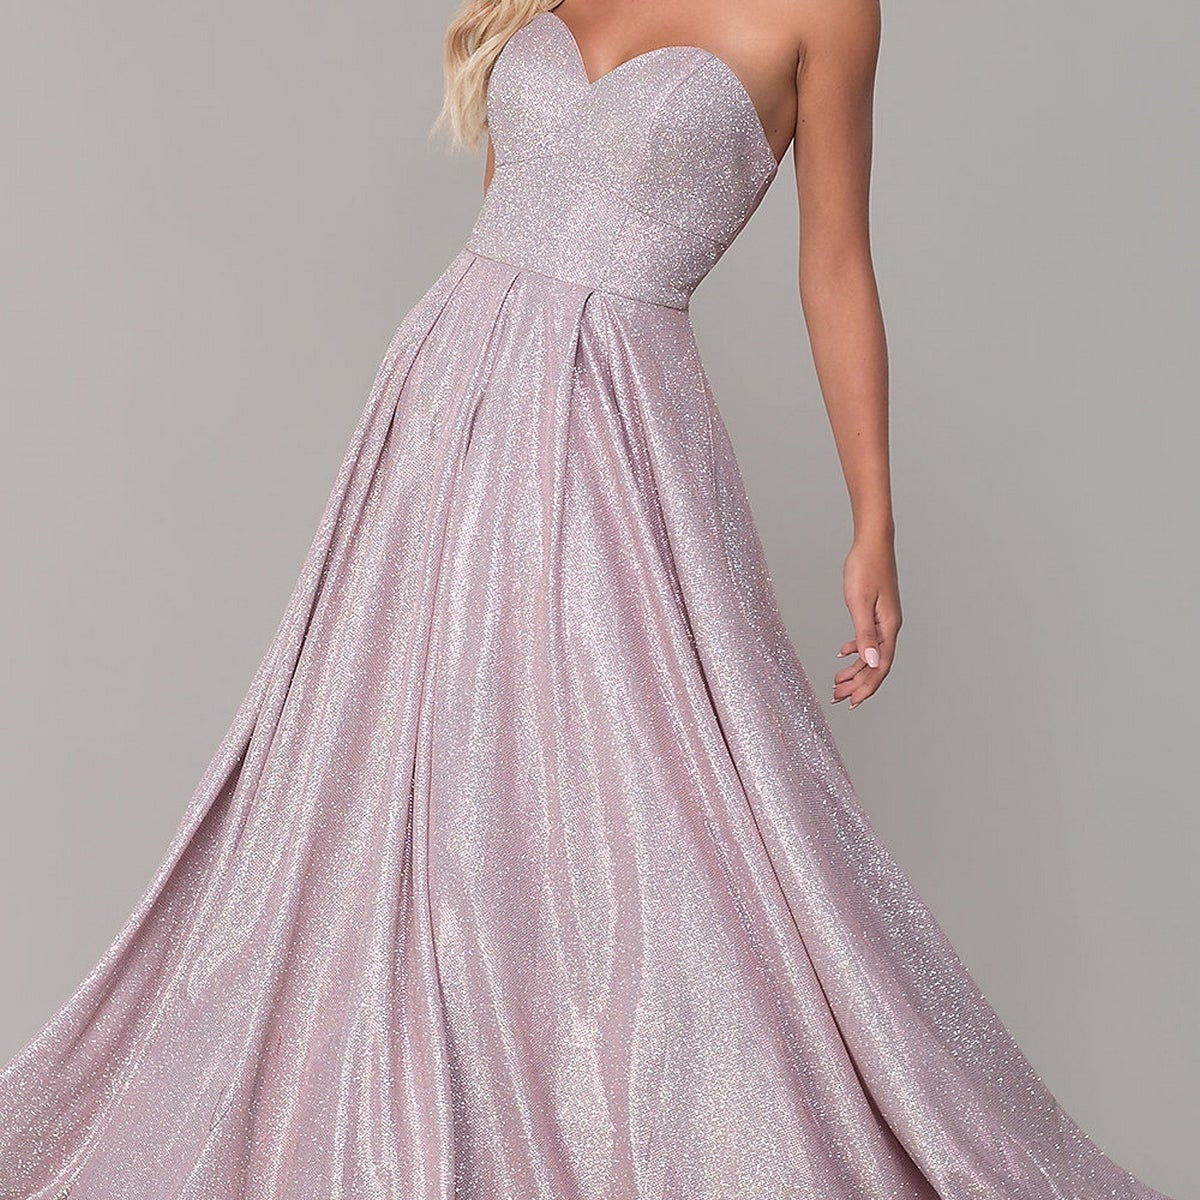 Strapless Sweetheart Sheer-Bodice Long Prom Dress